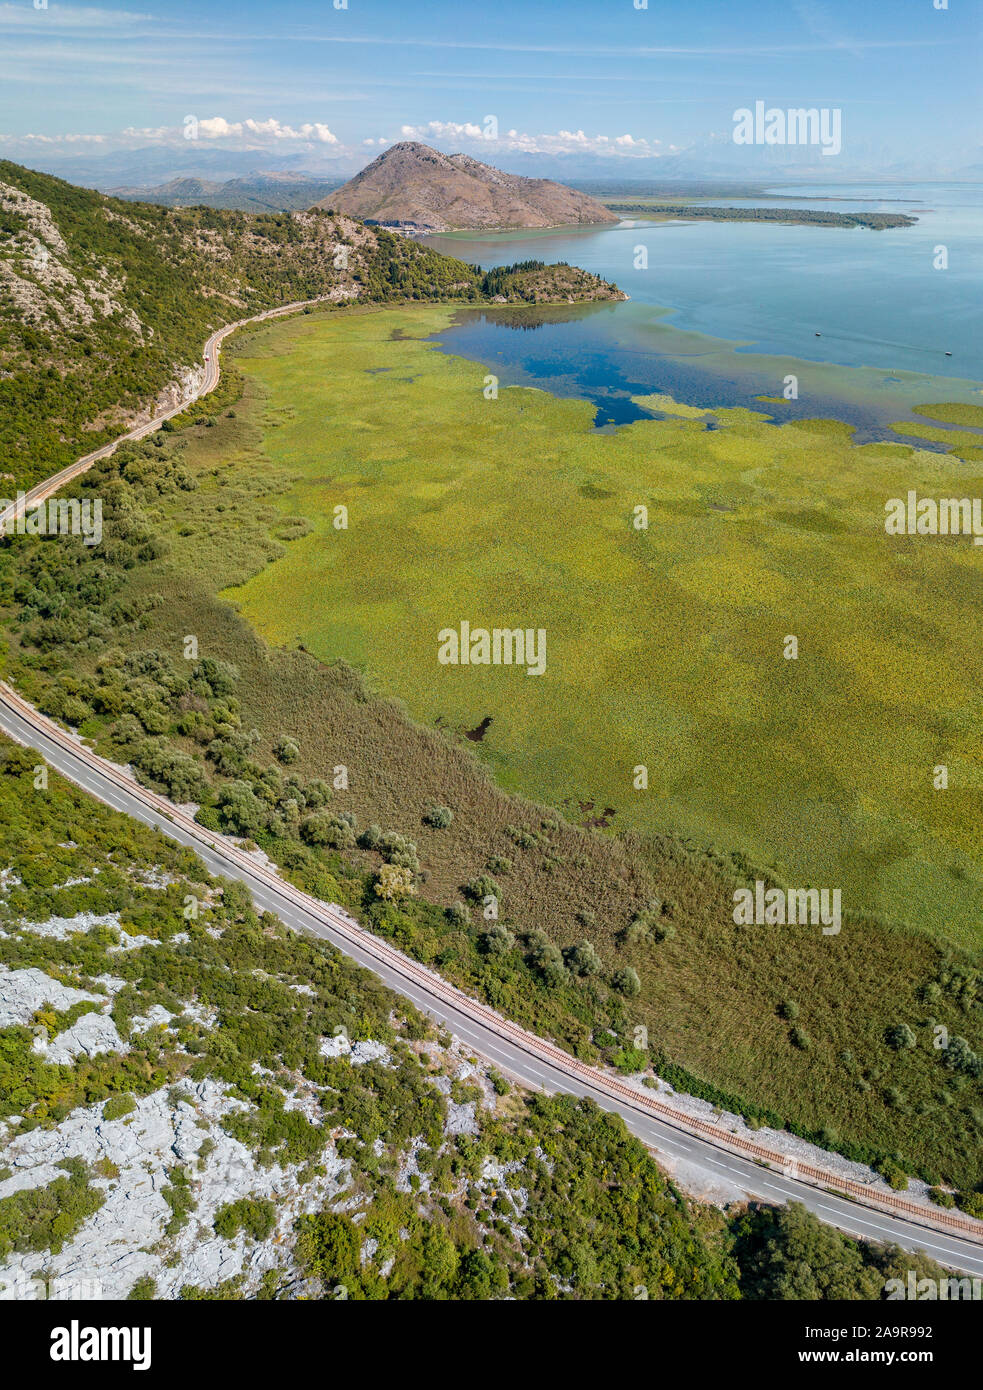 Vista aerea del Lago di Scutari o Lago di Scutari, Montenegro. Circondato dal parco nazionale da una natura incontaminata e la fauna selvatica, colline e montagne Foto Stock